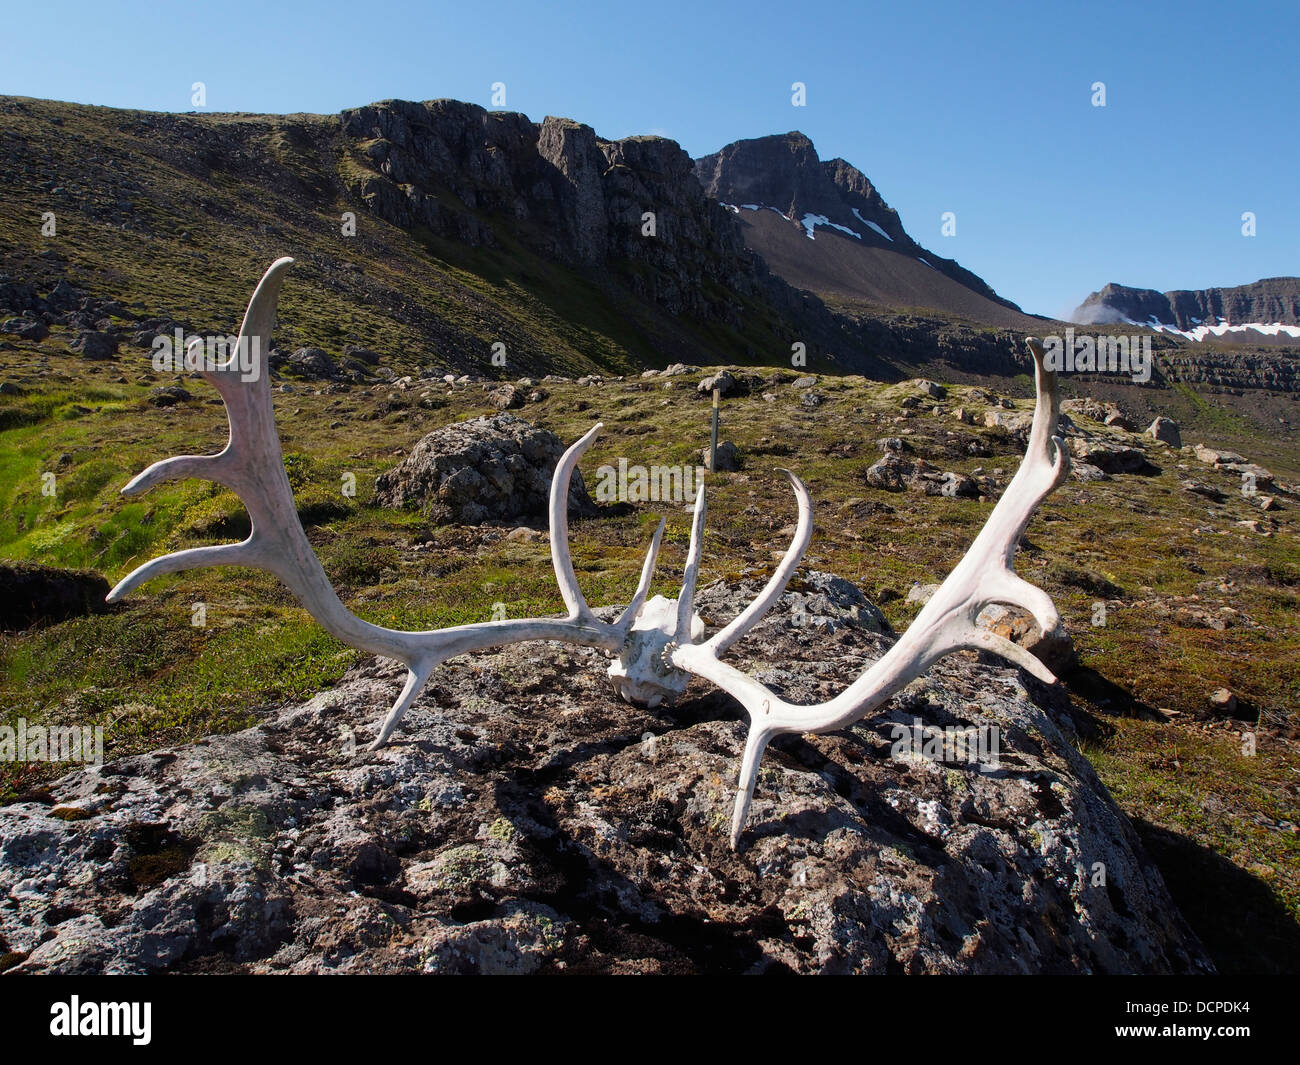 Reindeer antlers, Gerpir cliffs, east Iceland Stock Photo